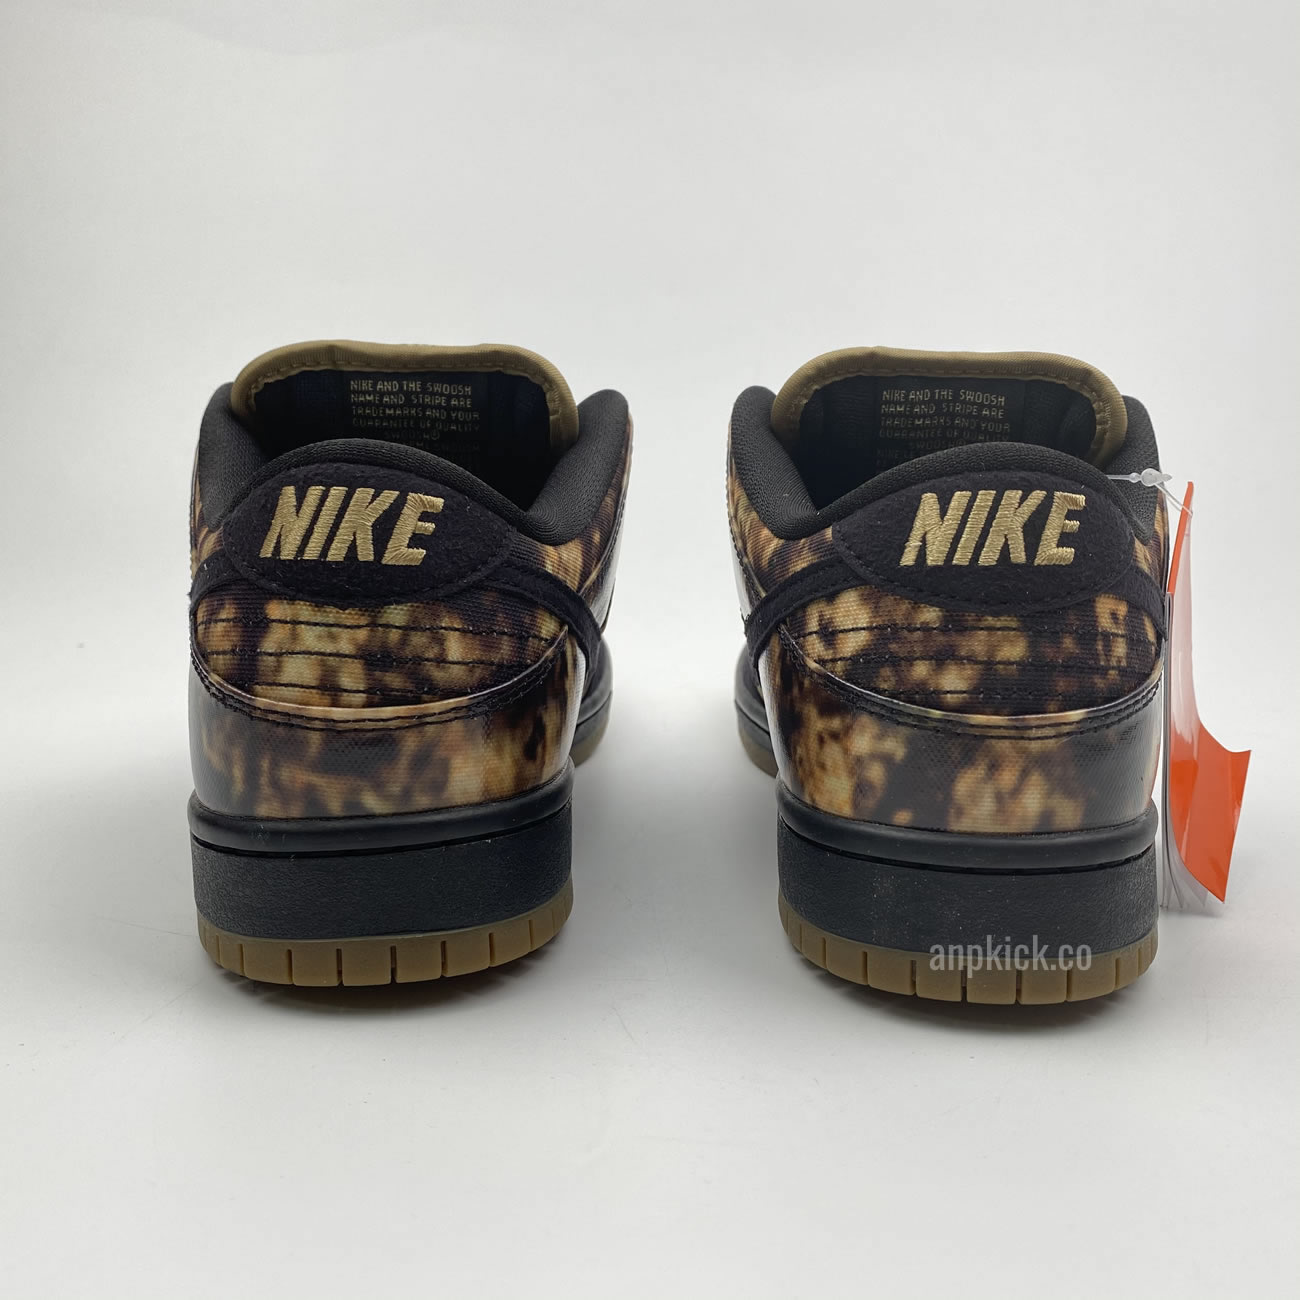 Nike SB Dunk Low Premium "Pushead 2" 536356-002 Release Date